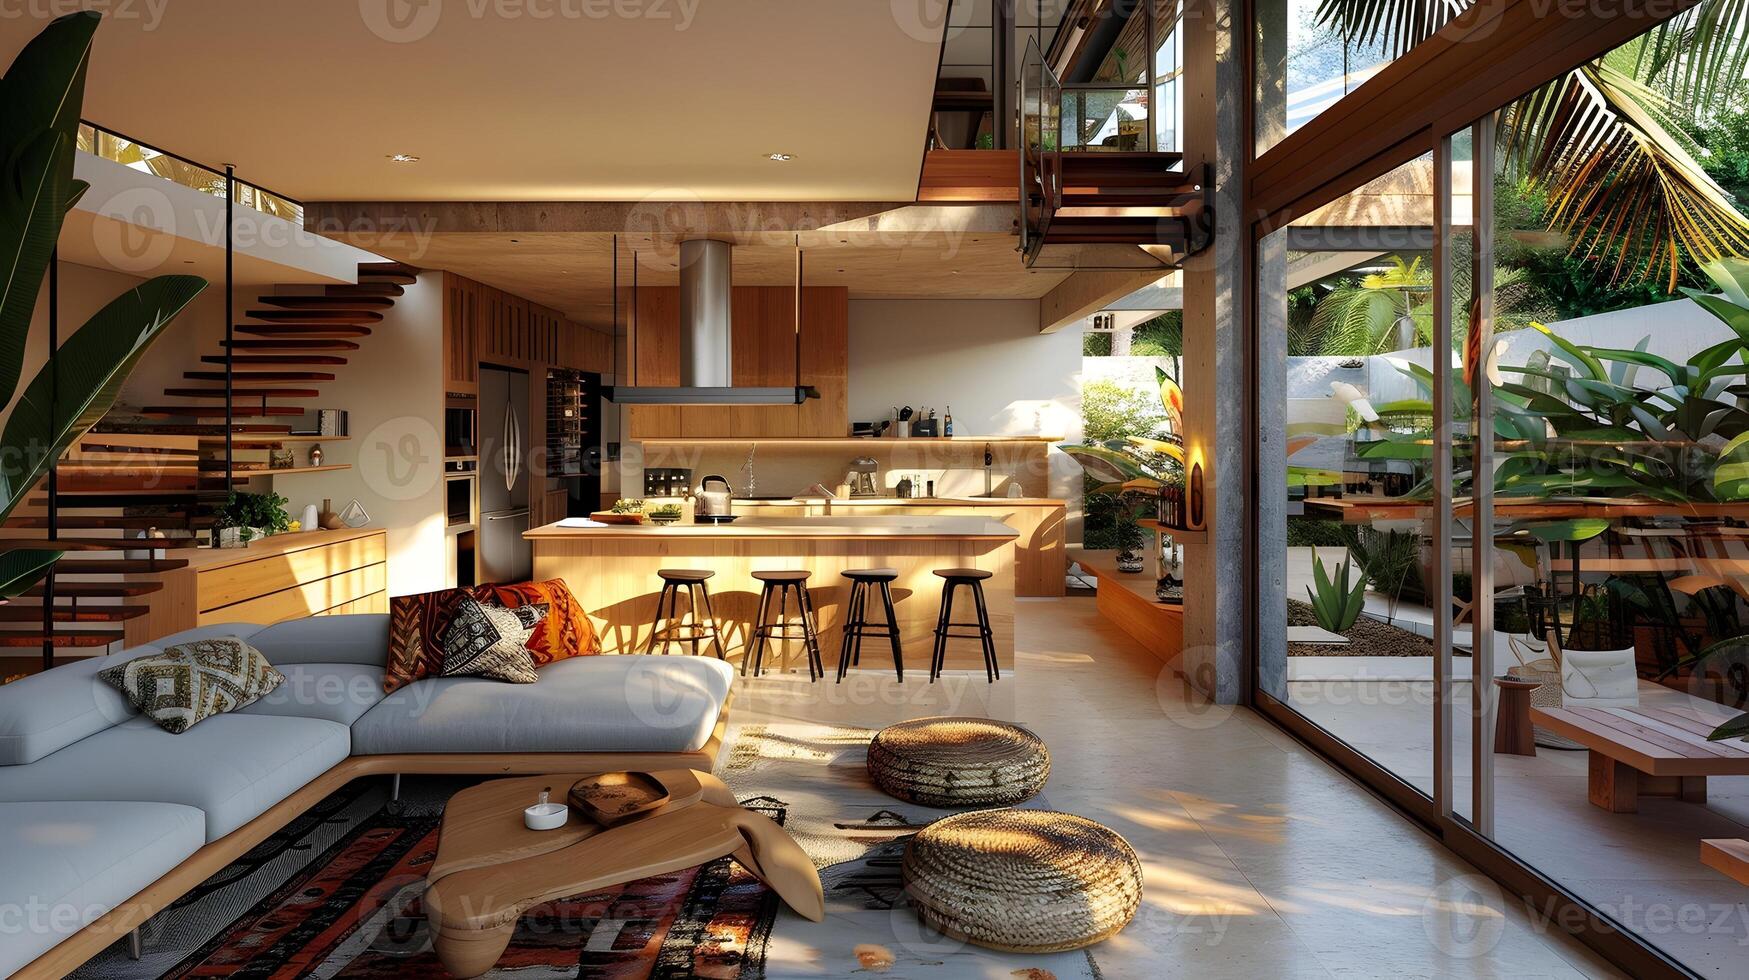 moderno Tulum estilo casa interior con abierto cocina y tropical plantas foto